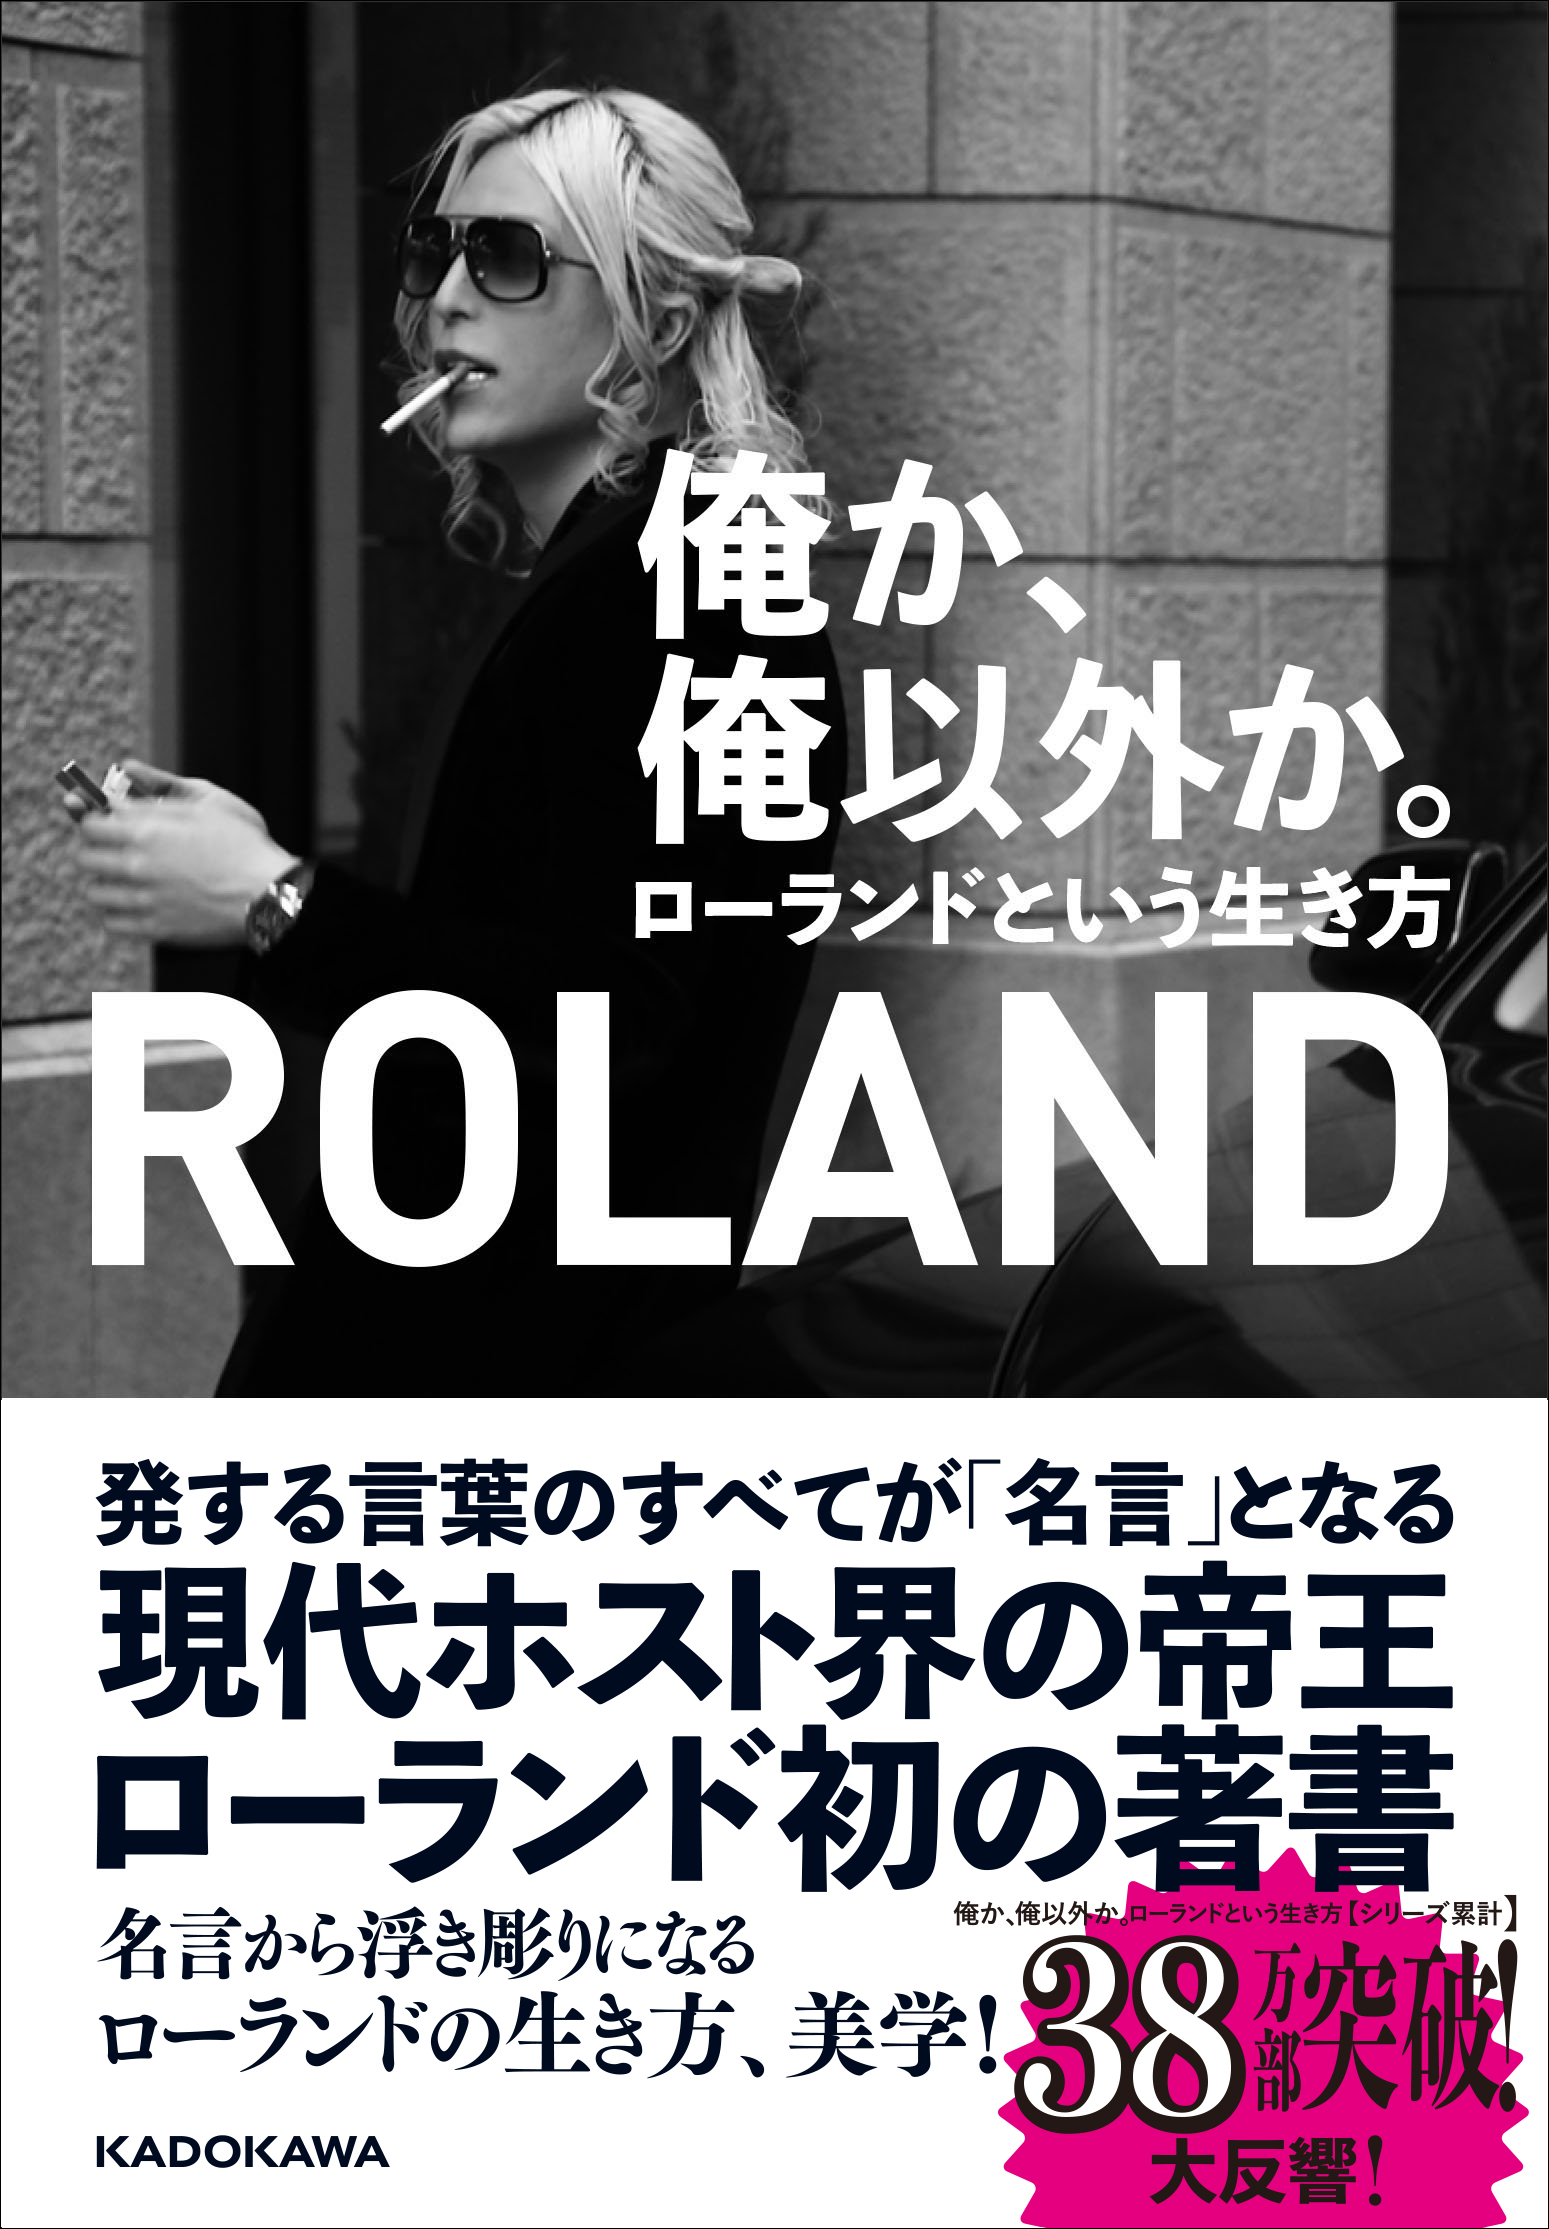 俺か 俺以外か ローランドという生き方 Roland 生活 実用書 Kadokawa